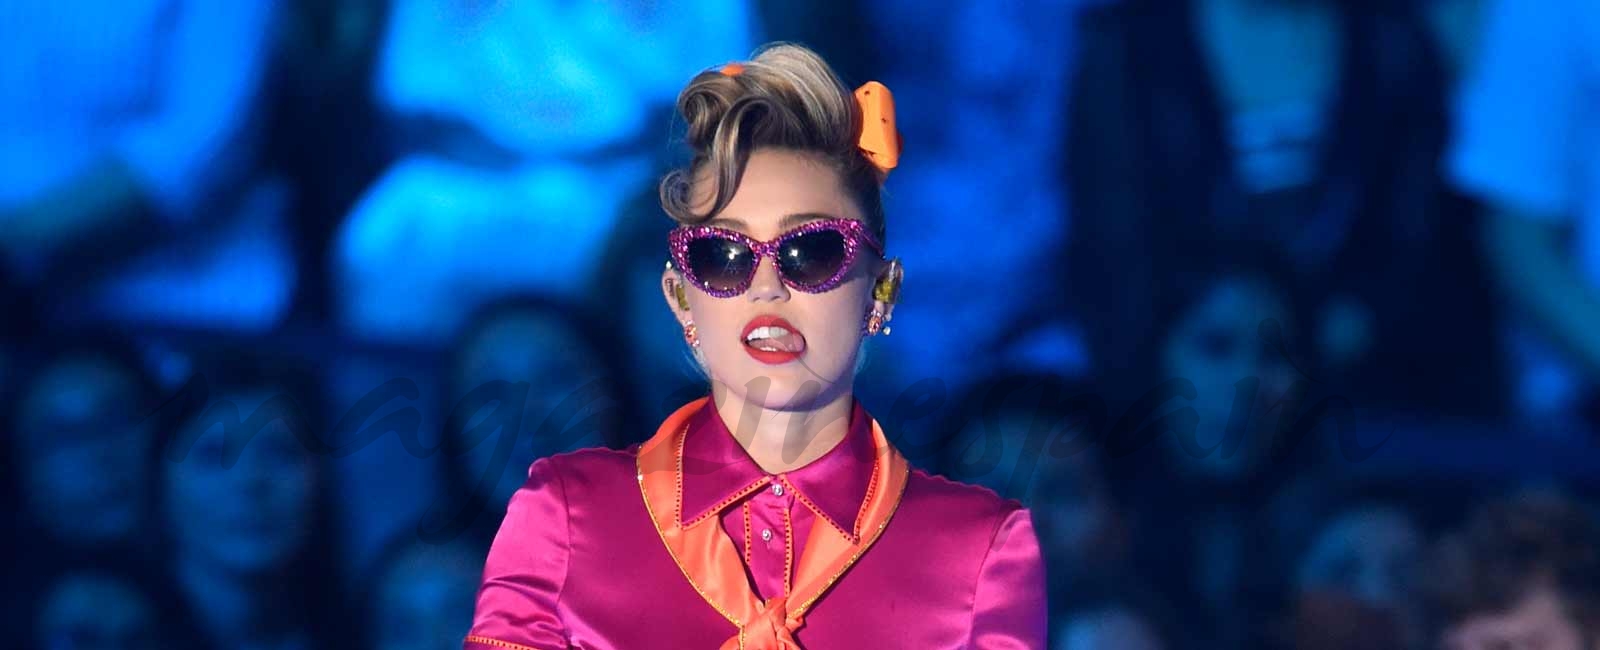 Miley Cyrus la “reina” del escándalo